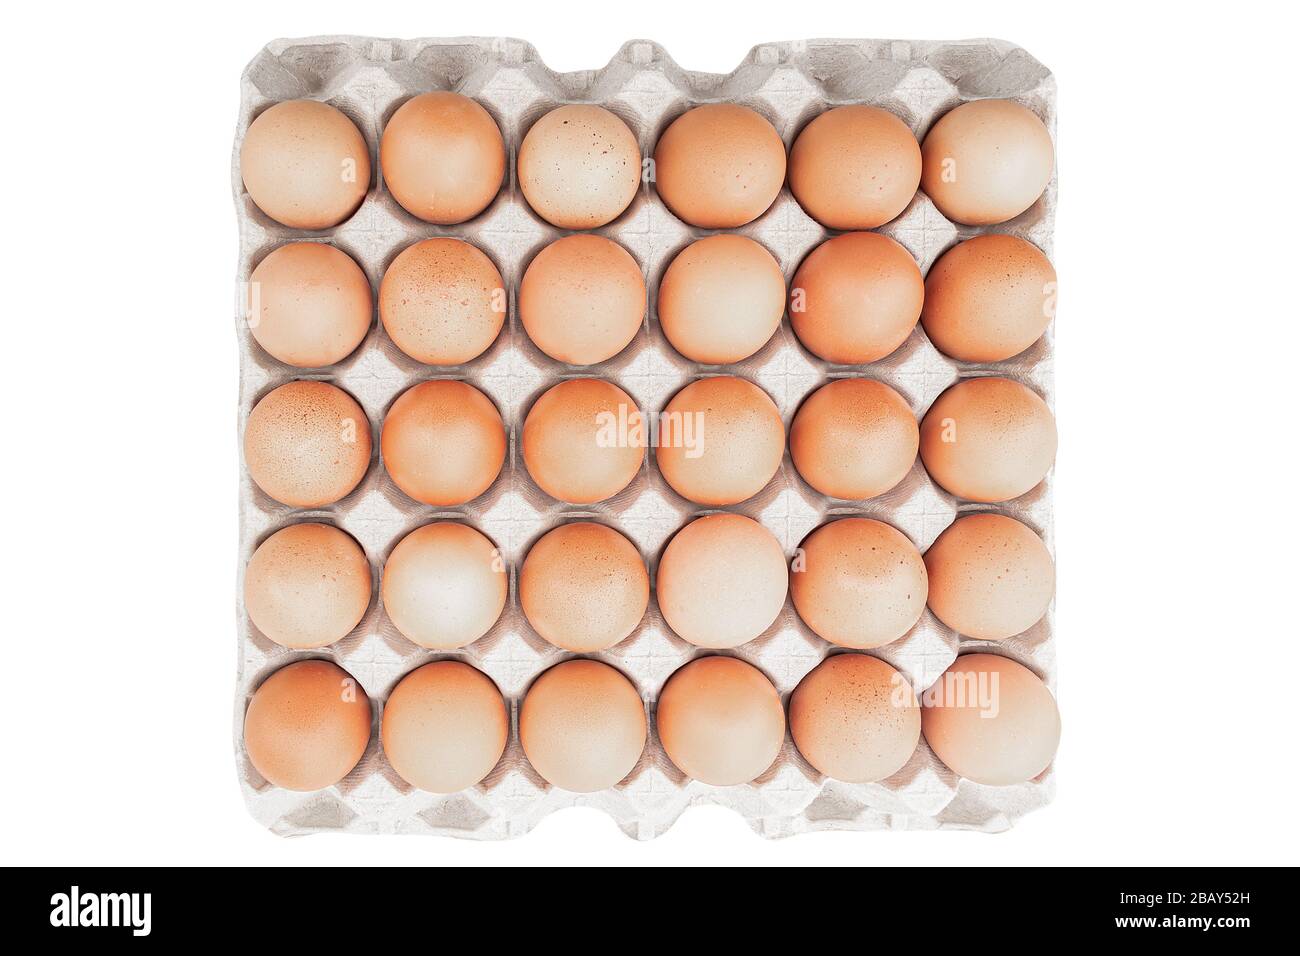 Eier aus biologischem Anbau in einem Eikasten isoliert auf weißem Grund. Hühner Eier aus ökologisch sauberen Gebieten. Draufsicht. Stockfoto